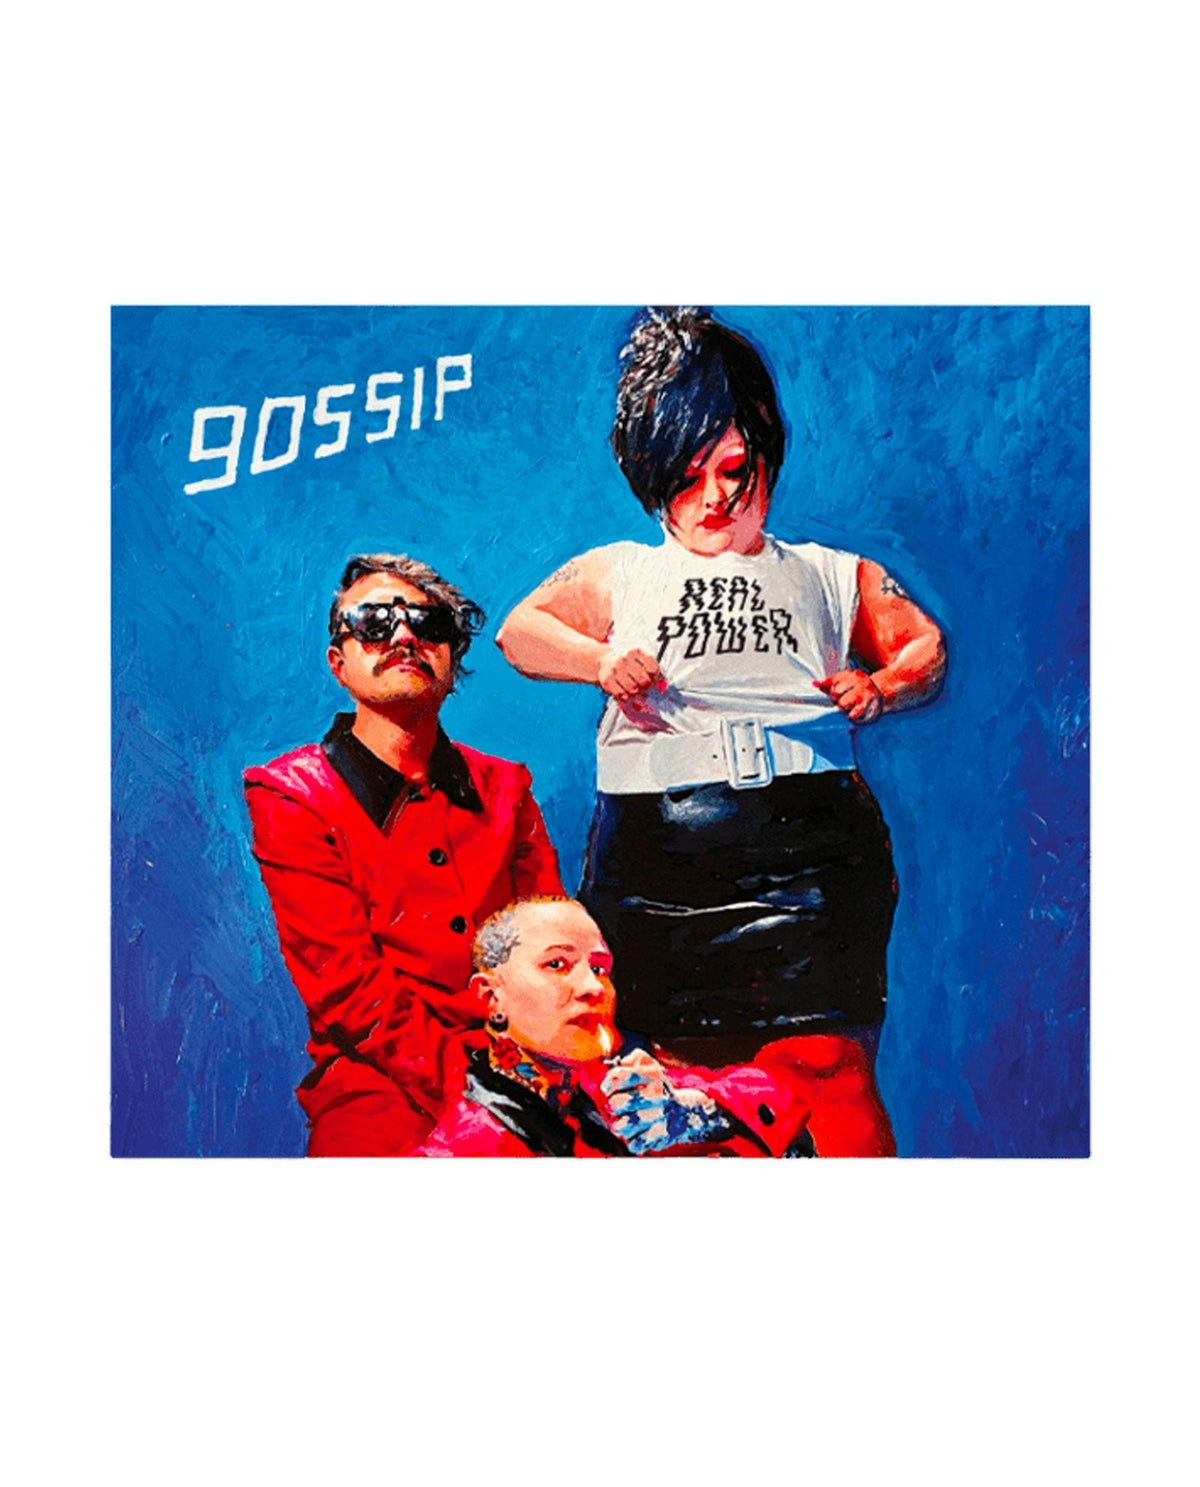 Gossip - LP Vinilo "Real Power" - D2fy · Rocktud - Rocktud